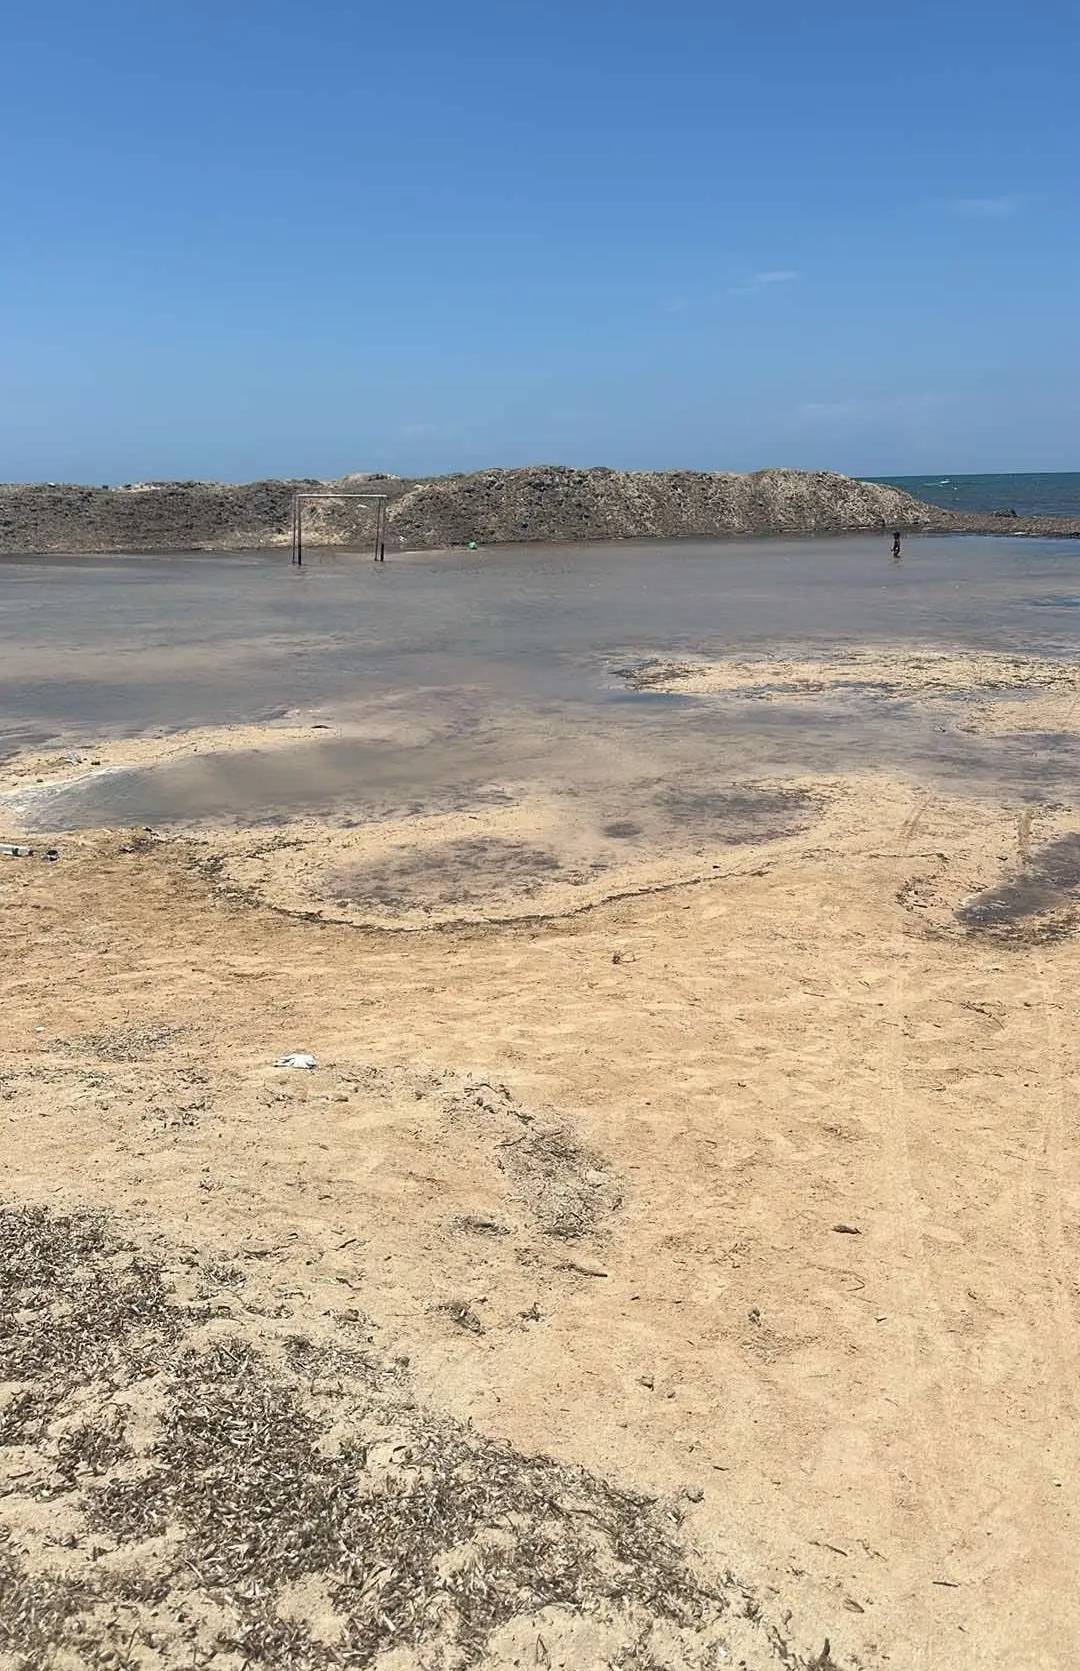 مضلل: لا صحة لخبر حدوث تسونامي في ليبيا وتراجع مياه البحر يعود لظاهرة المد والجزر فقط